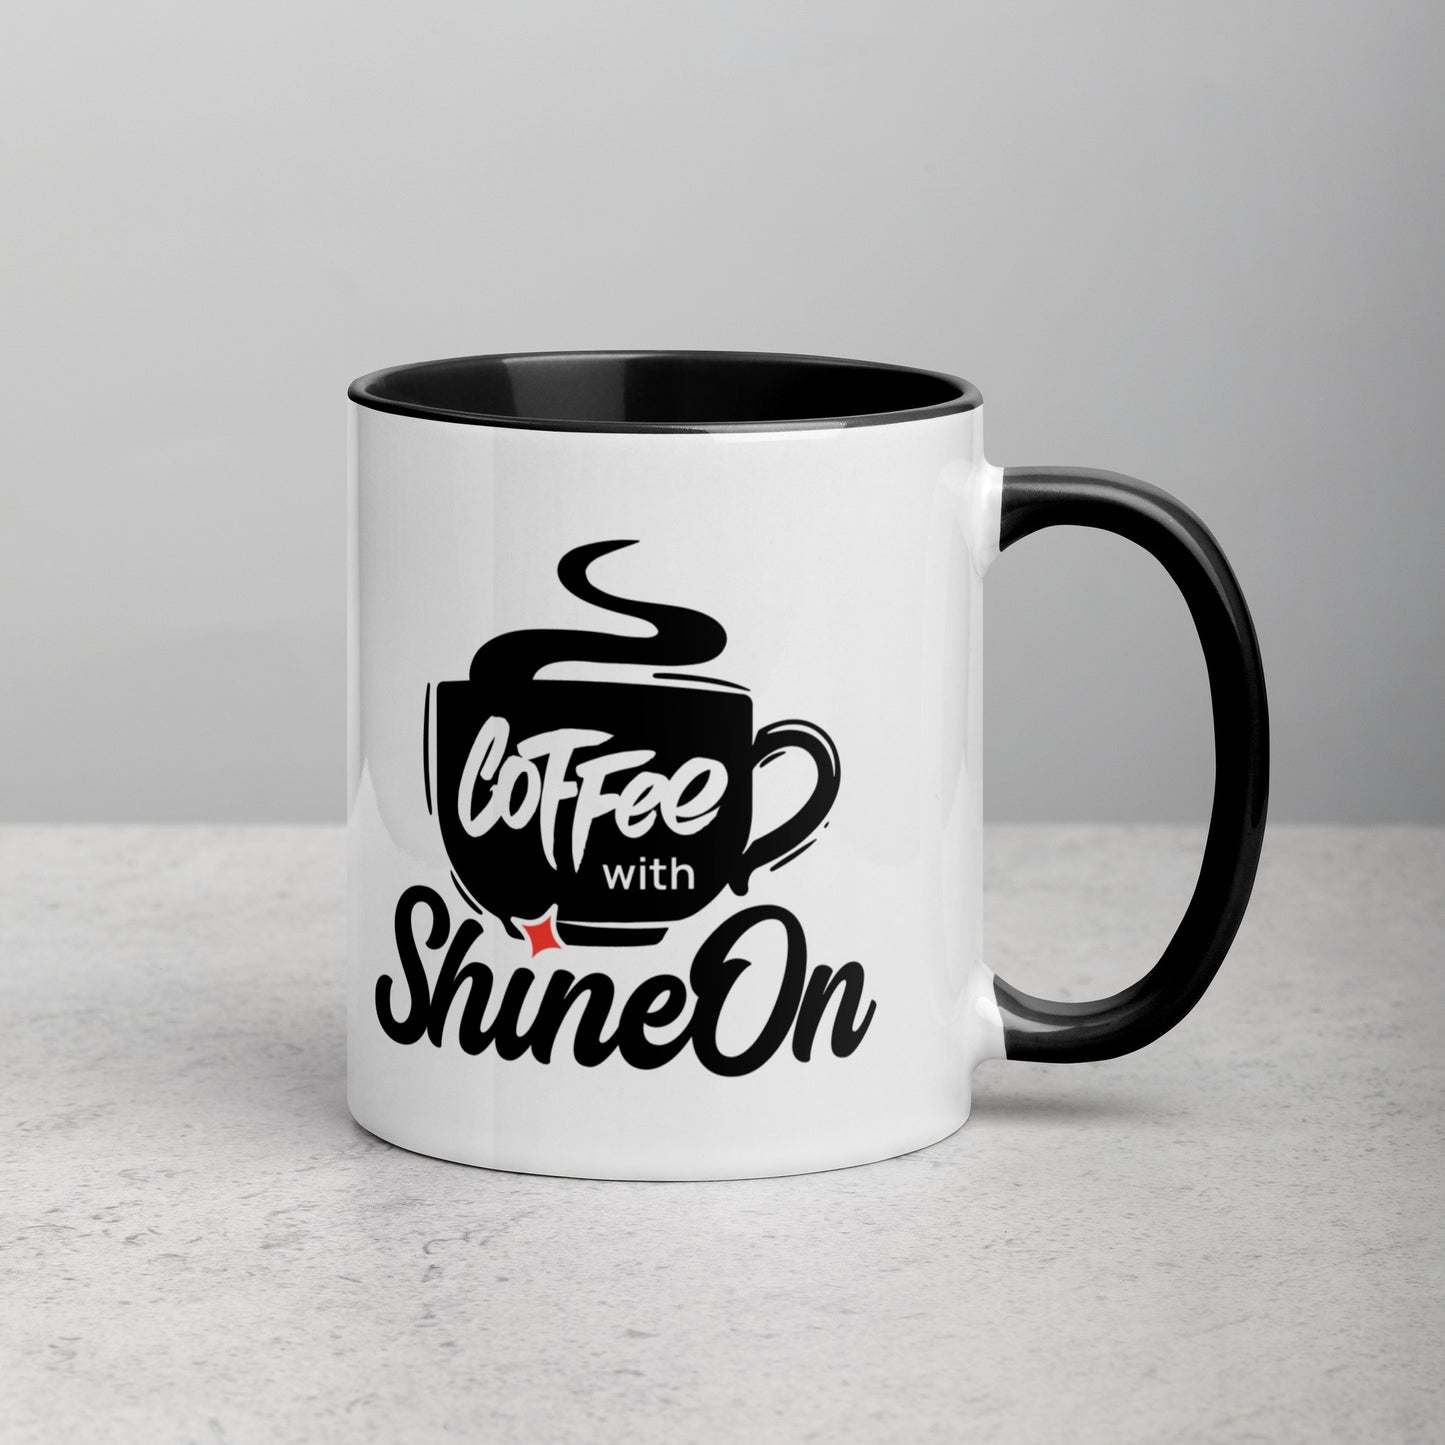 Coffee with ShineOn Mug